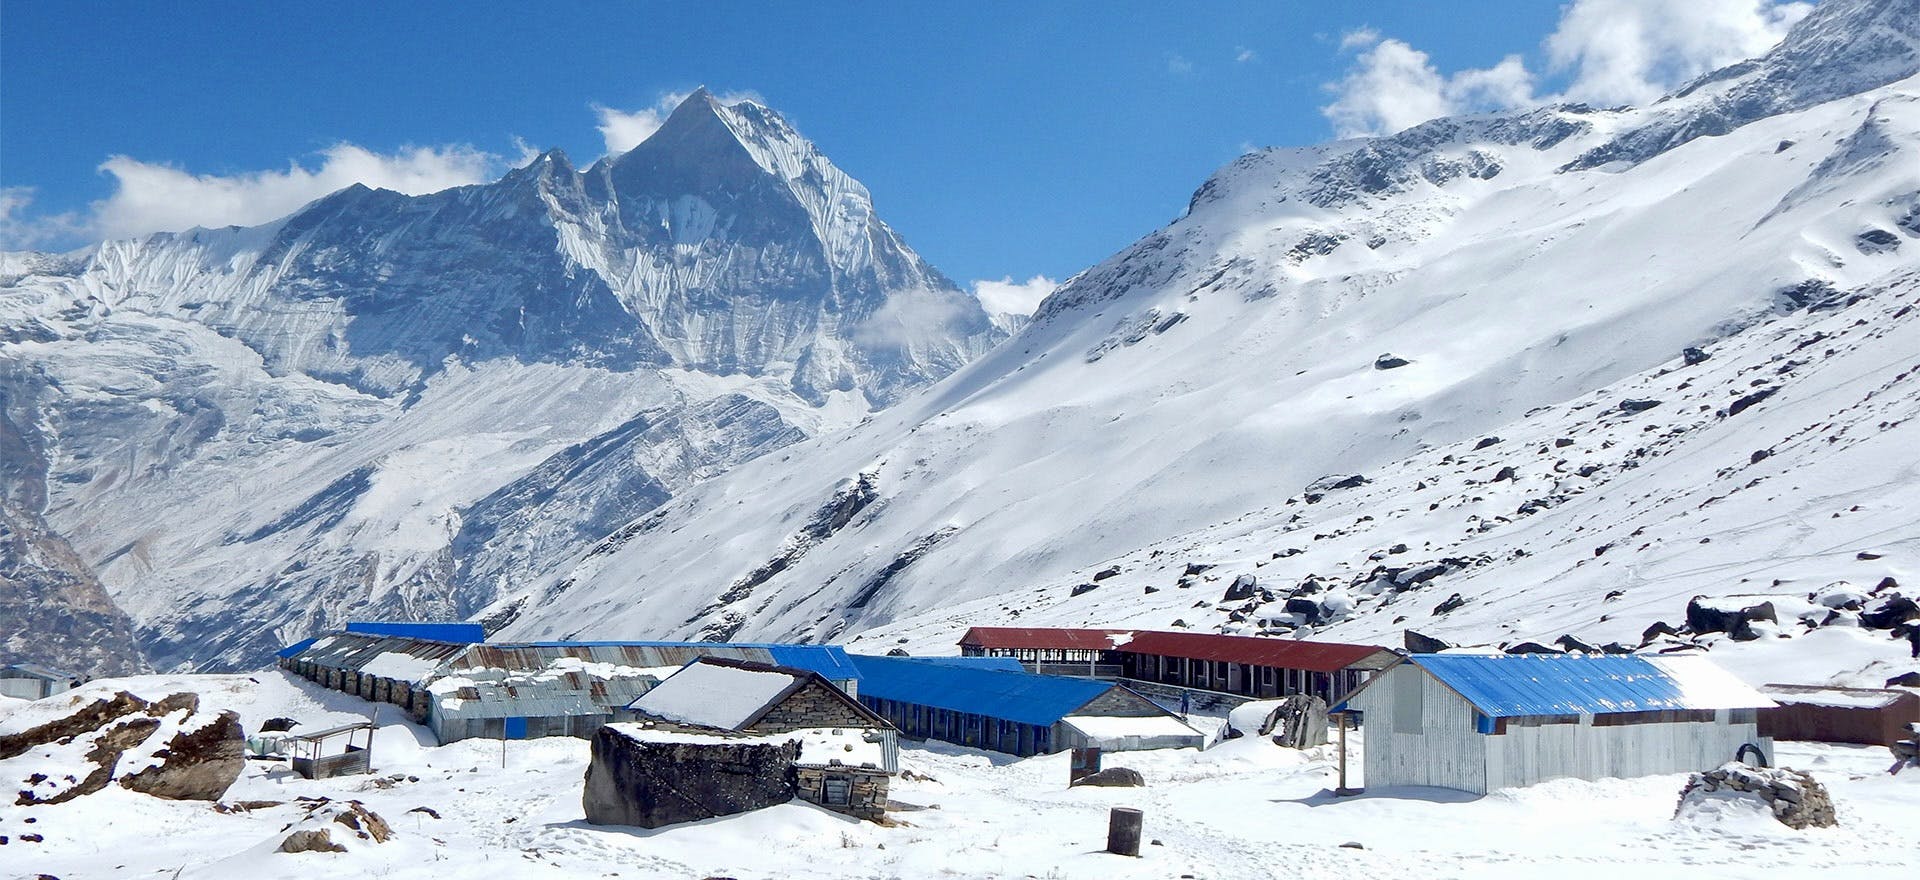 Annapurna Base Camp Trek Safety